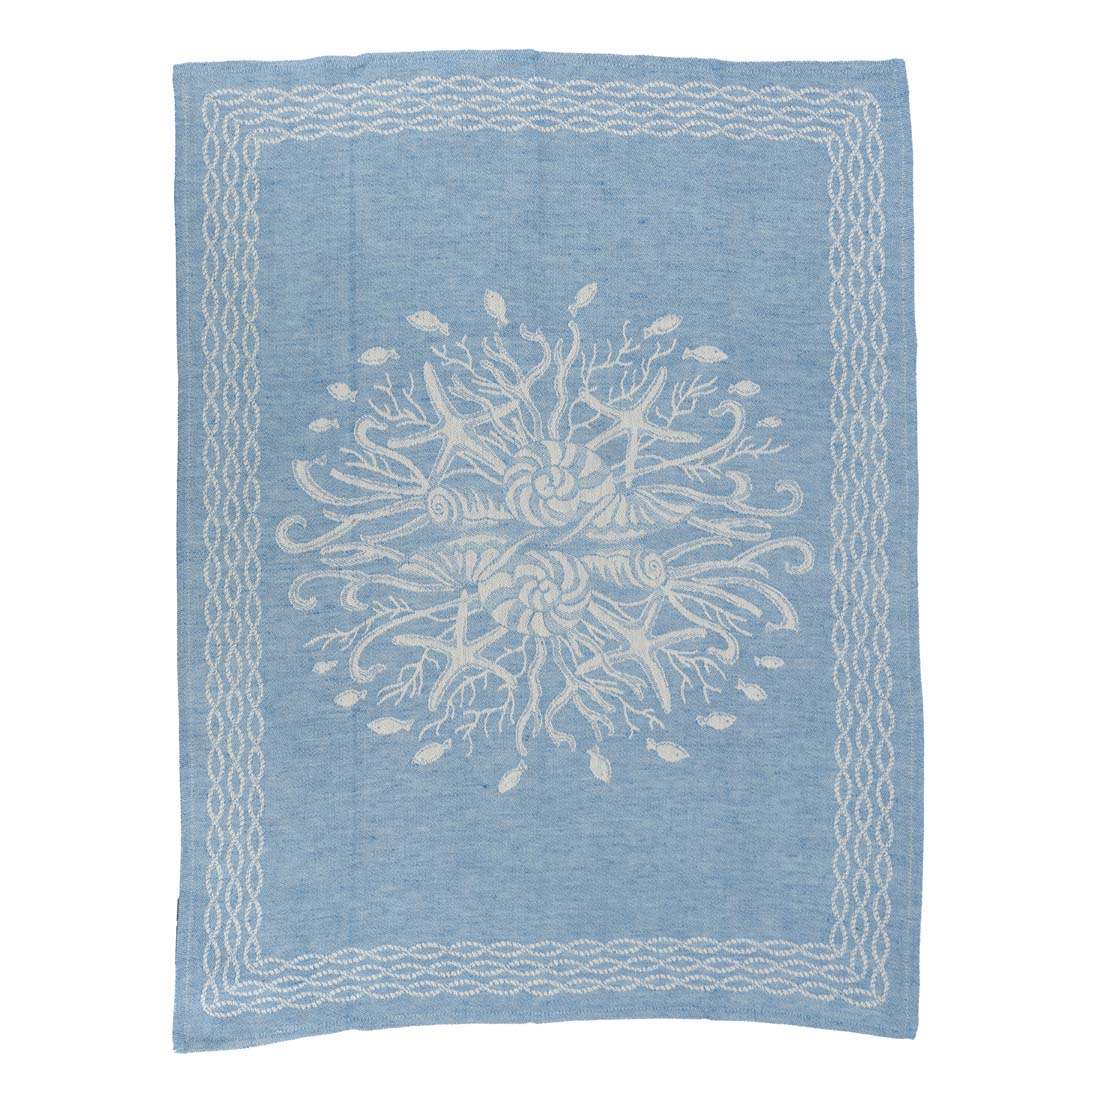 Turquoise Italian Linen Tea Towel